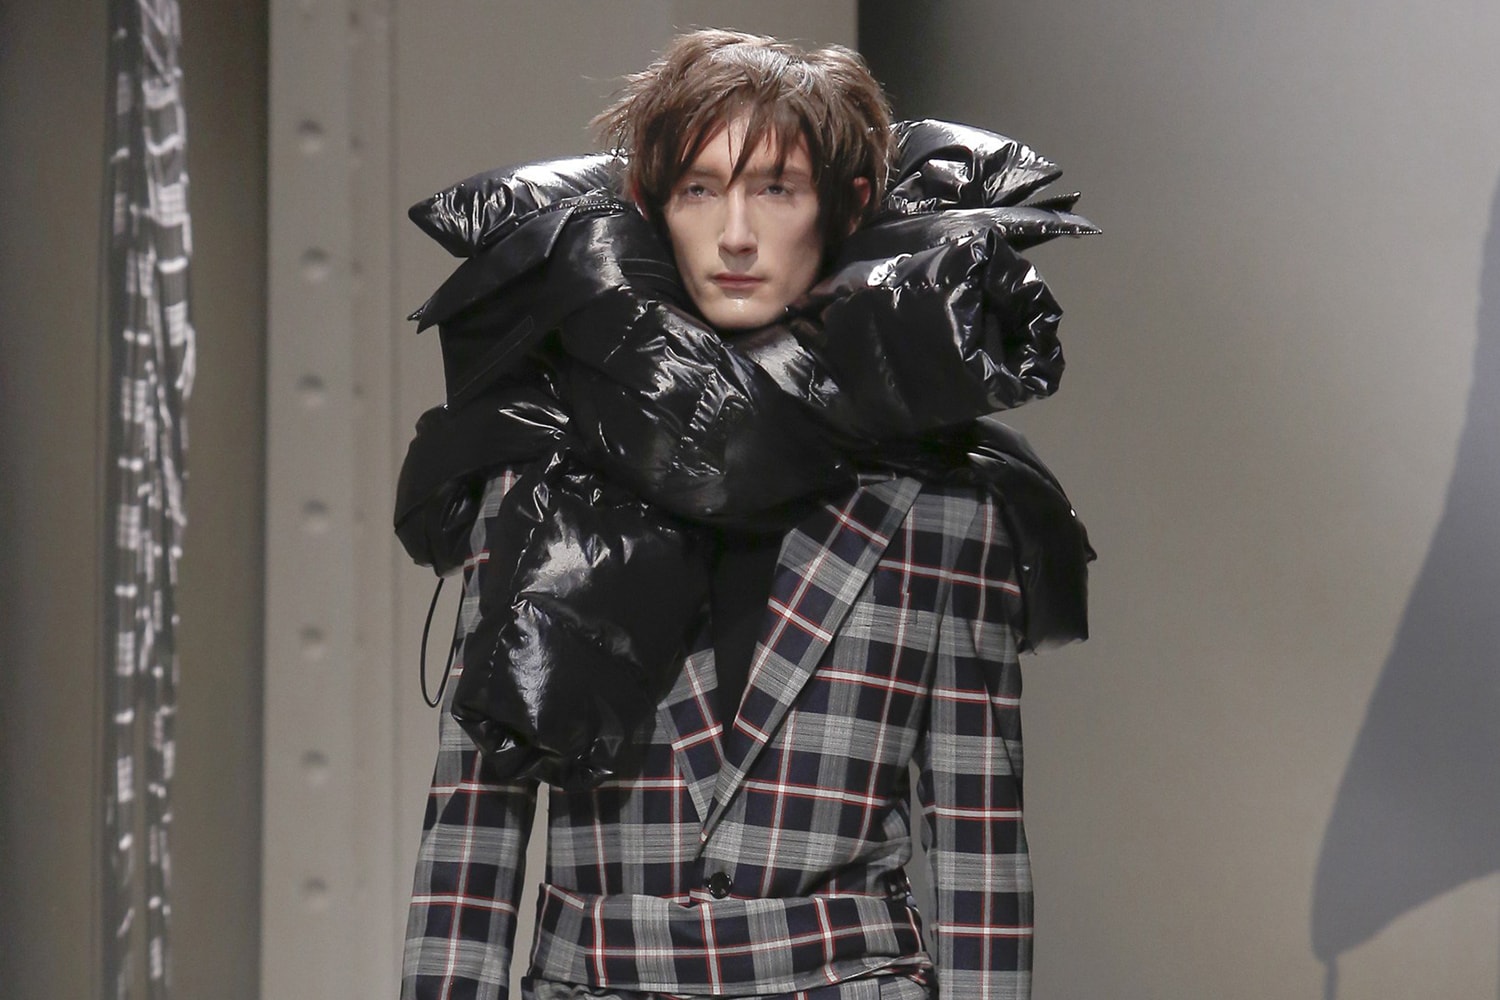 2018 가을 겨울 유럽 패션위크에서 활약한 국내 디자이너 4인 fall winter paris fashion week pitti uomo wooyoungmi juun j beyond closet bmuette